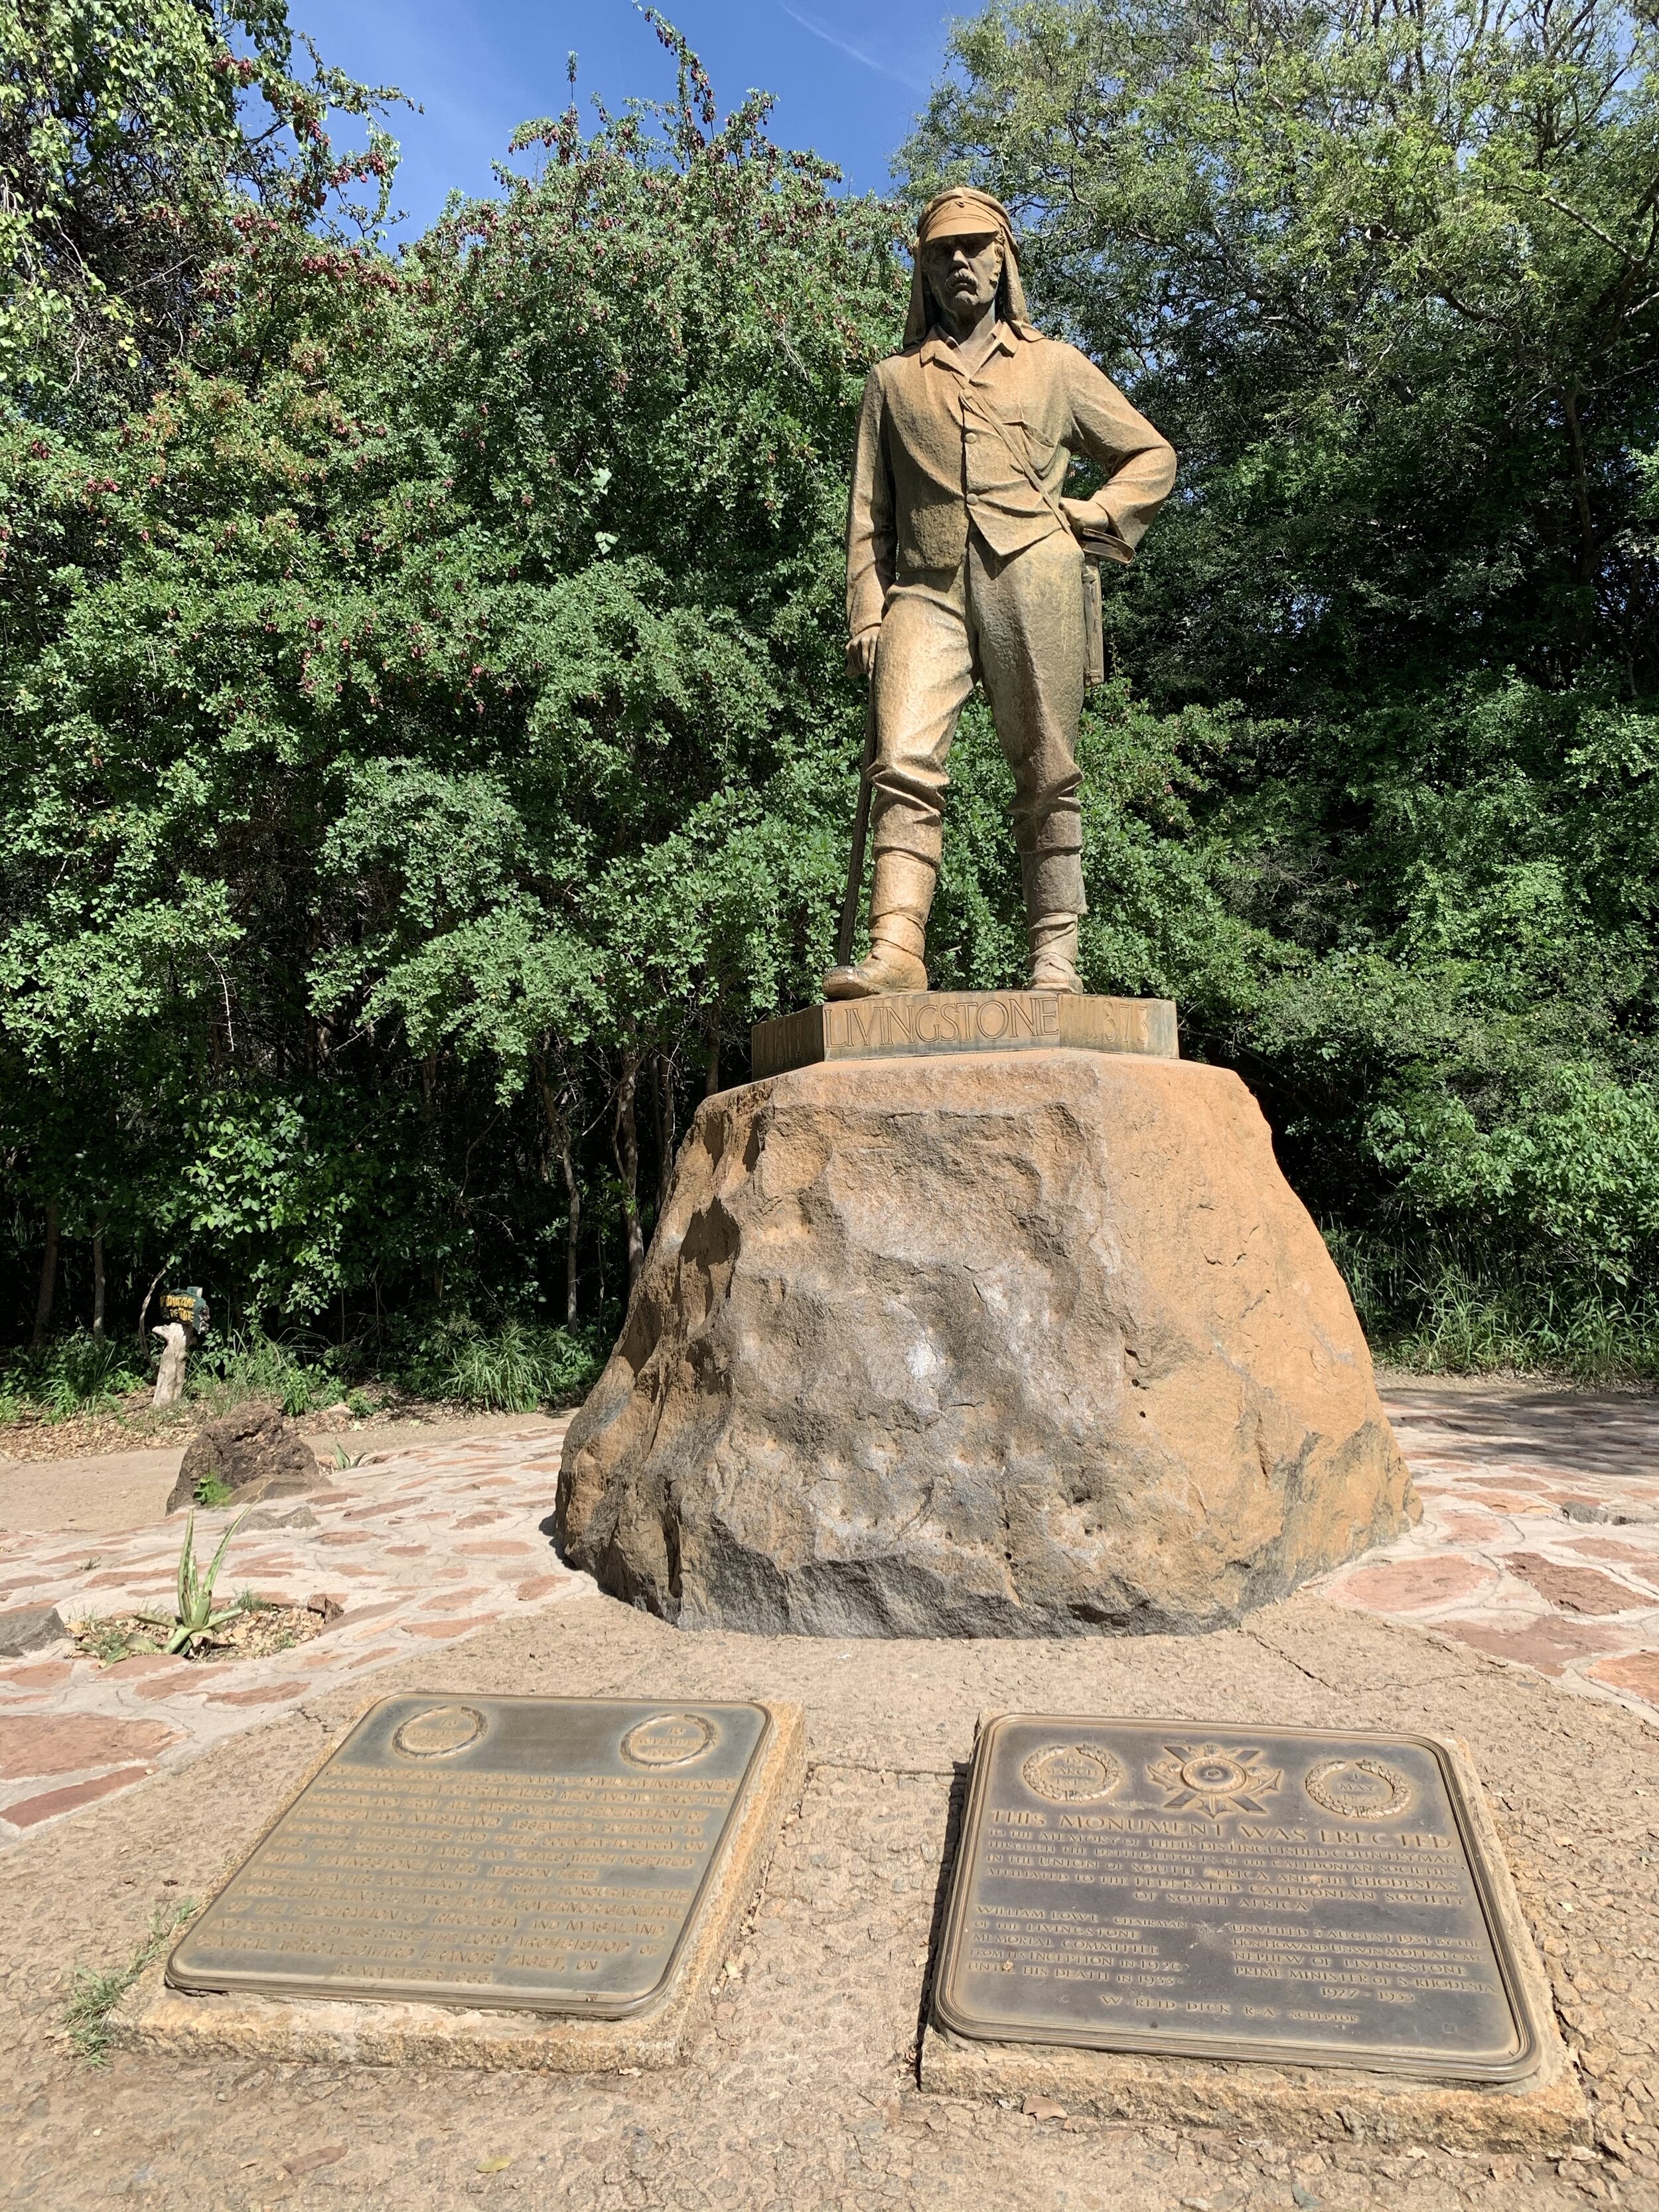 Livingstone statue #2.jpg